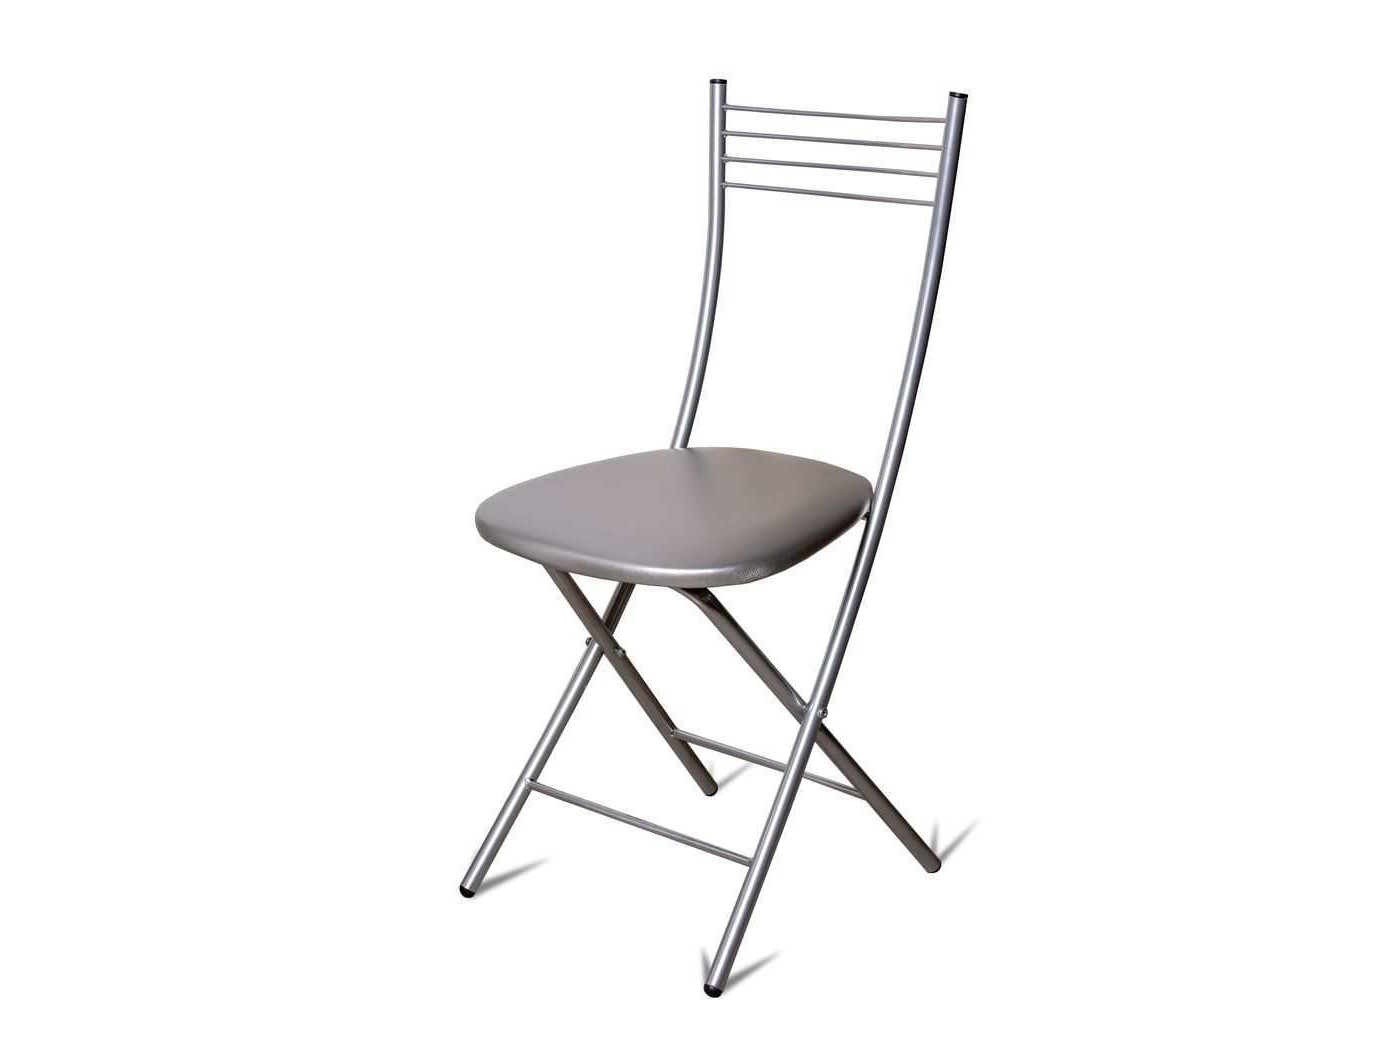 Стул Хлоя Складной Серебро/ С-116 116, Металл стул хлоя складной серебро с 221 серебро металл